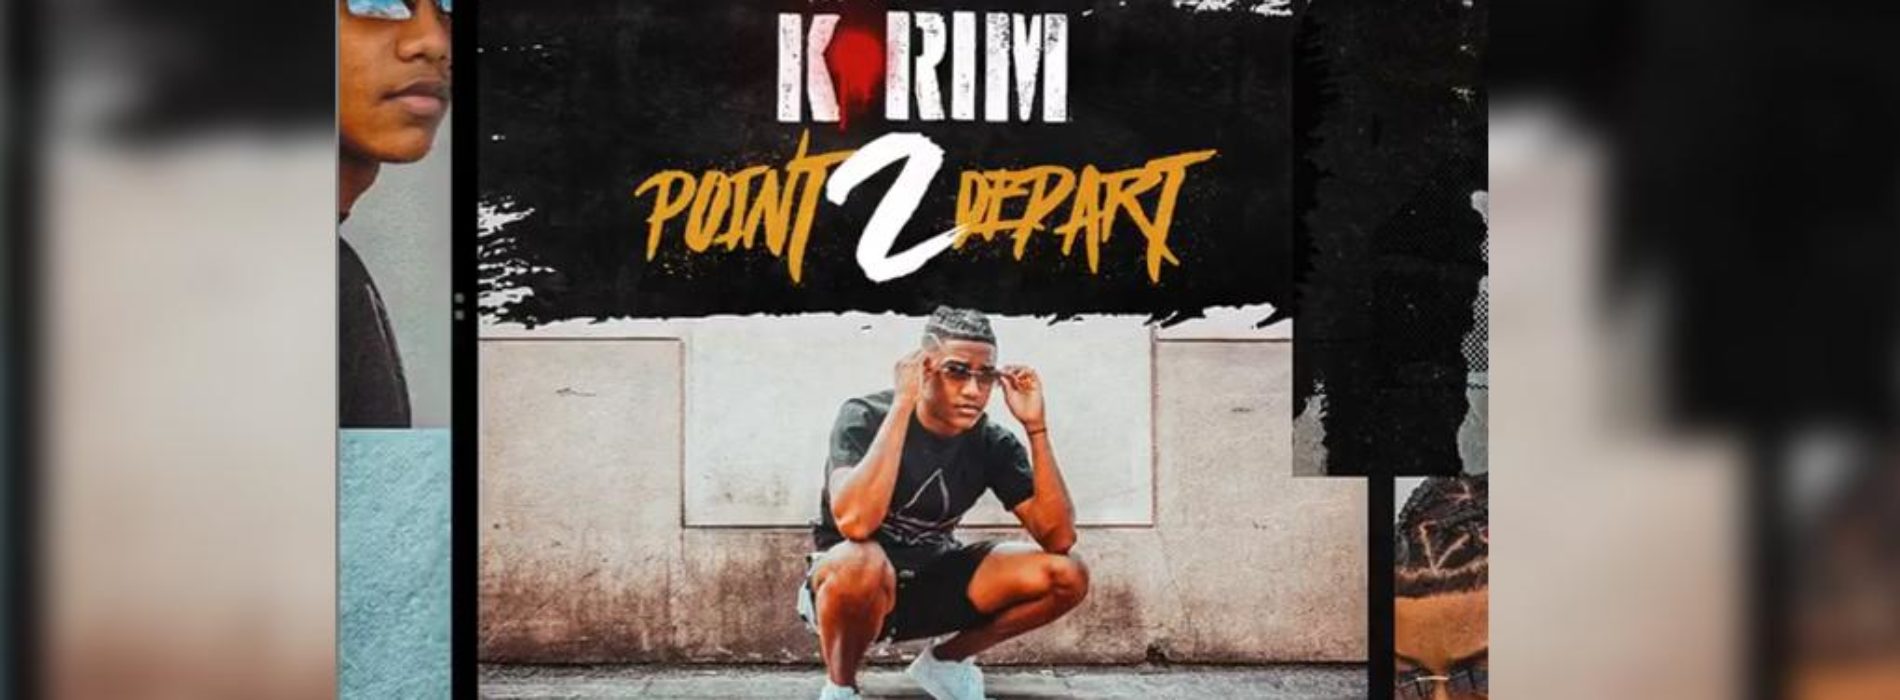 Écoute 8 titres de K-RIM  » POINT 2 DEPART  » . Découvre le clip de ATTILA – Octobre 2020